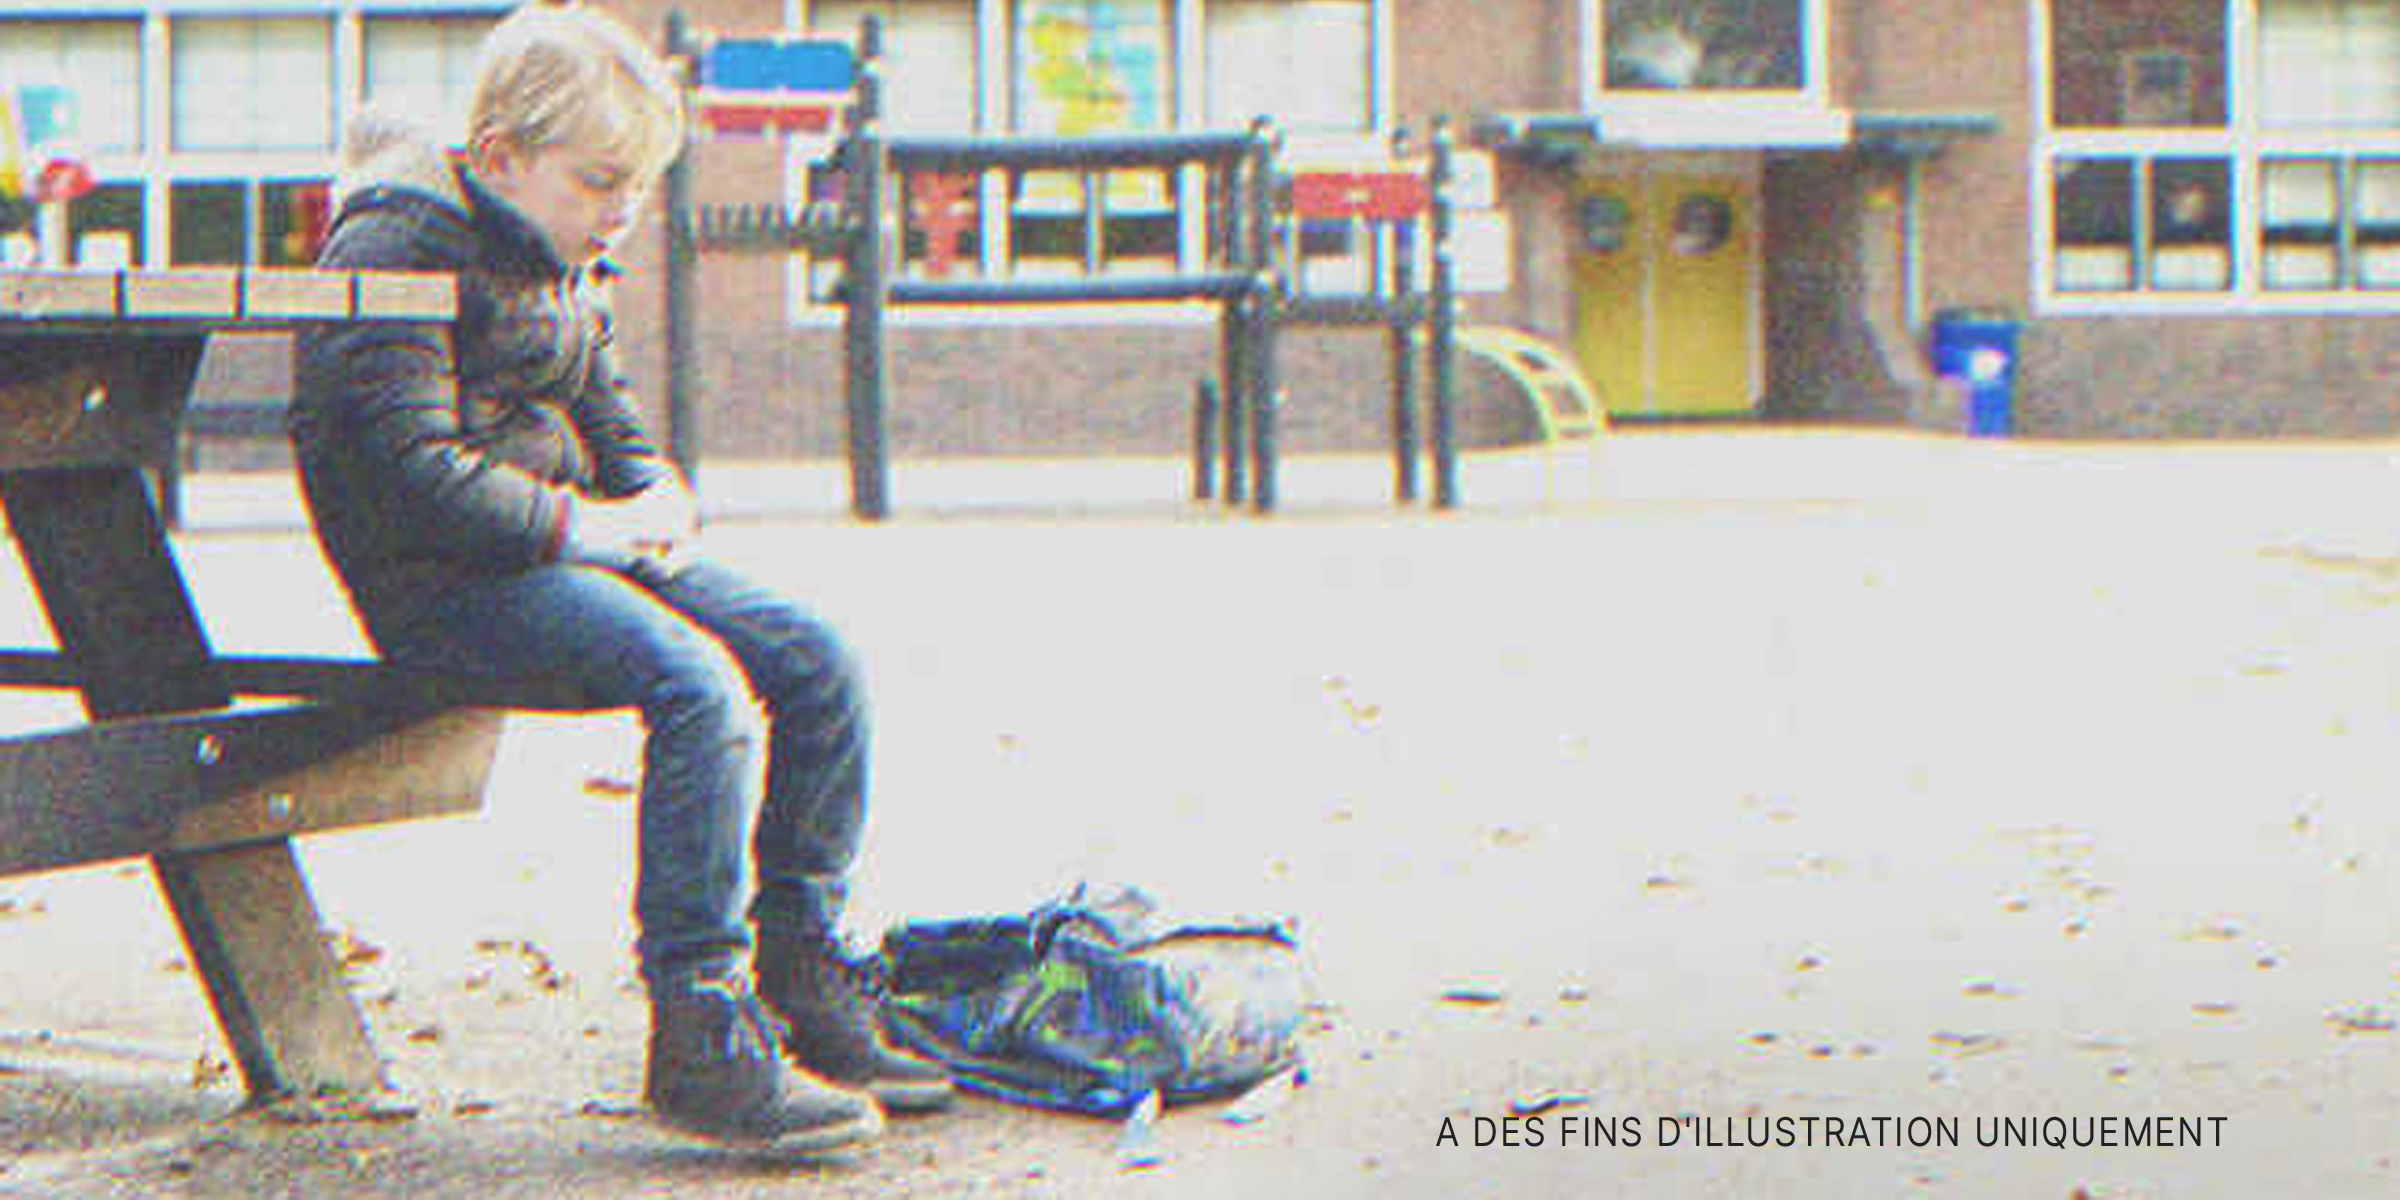 Un garçon assis seul sur un banc à l'extérieur d'une école | Source : Shutterstock